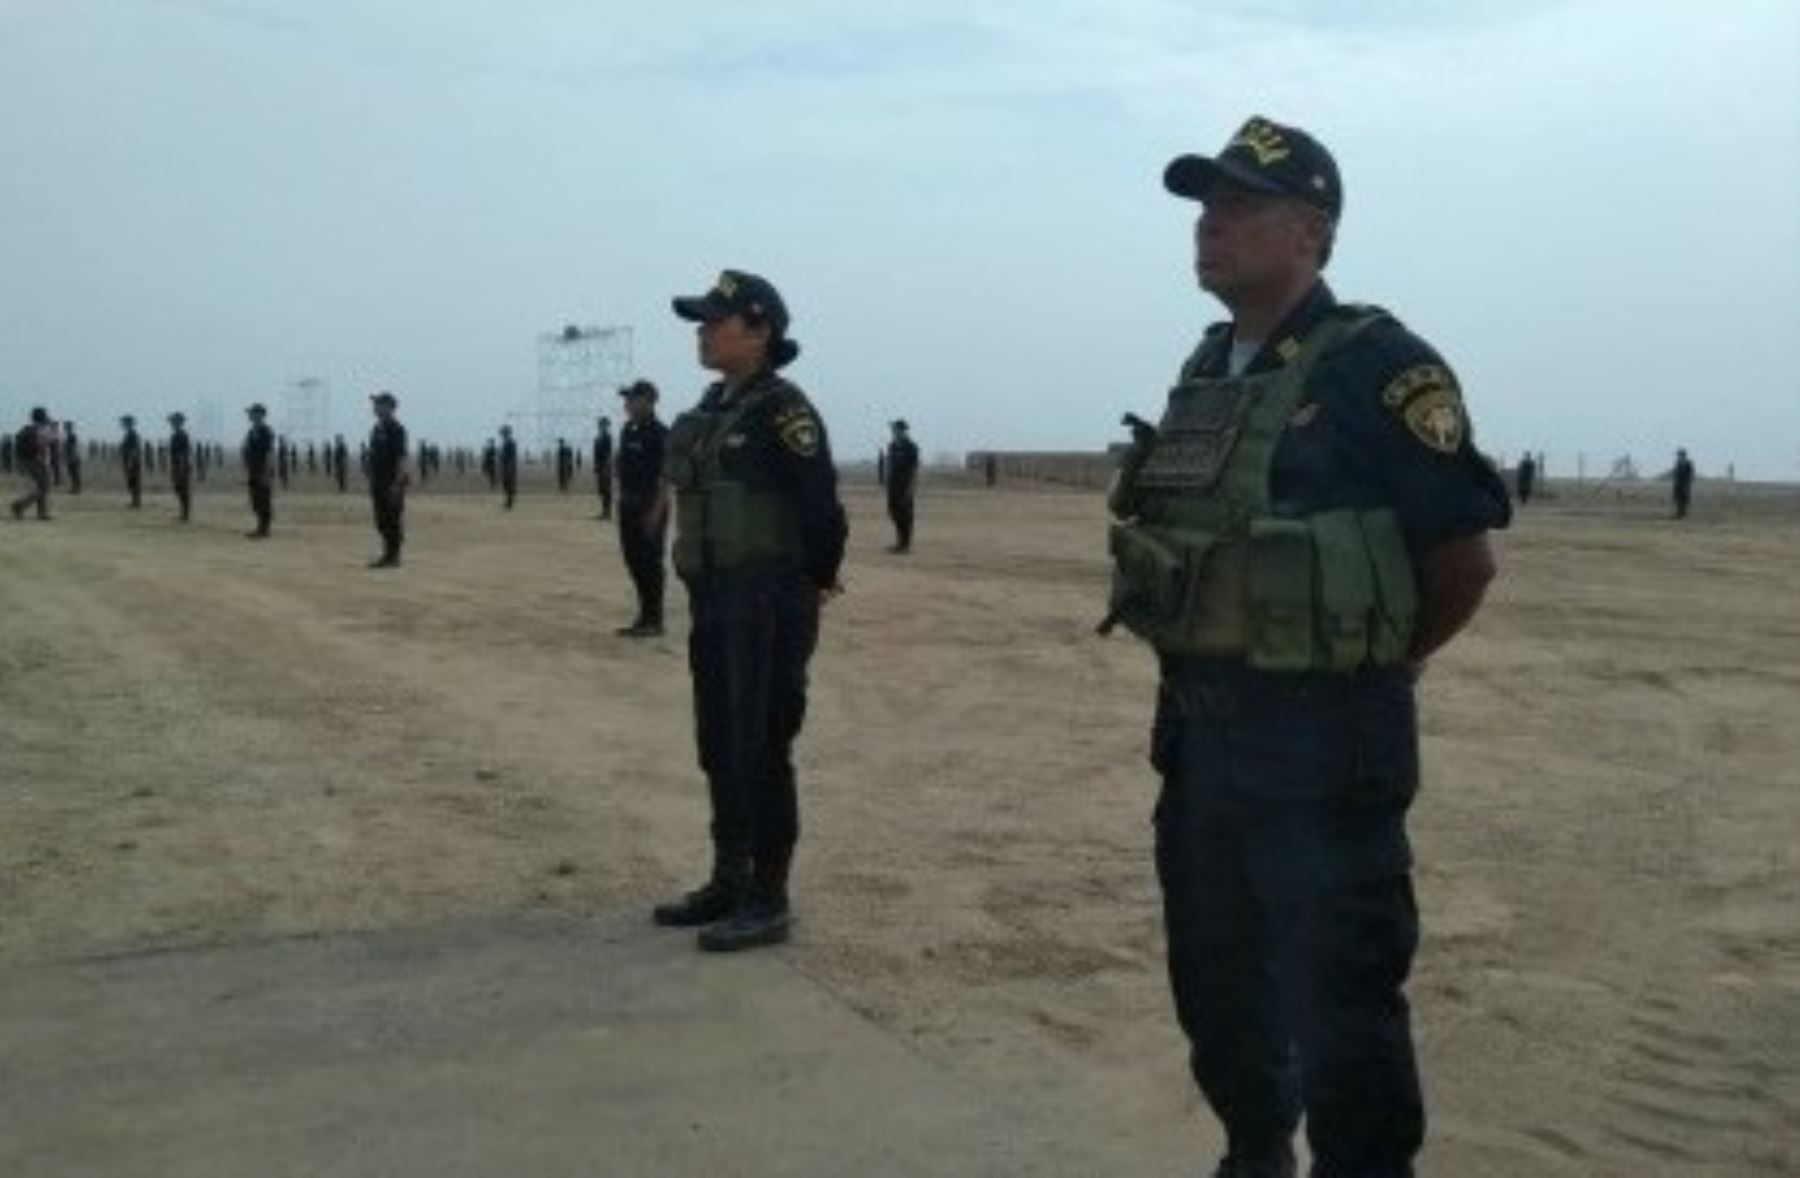 Cerca de 6,000 agentes de diferentes unidades de la Policía Nacional del Perú (PNP) han sido designados para brindar seguridad al Papa Francisco durante el desarrollo de sus actividades en la ciudad de Trujillo el 20 de enero próximo.